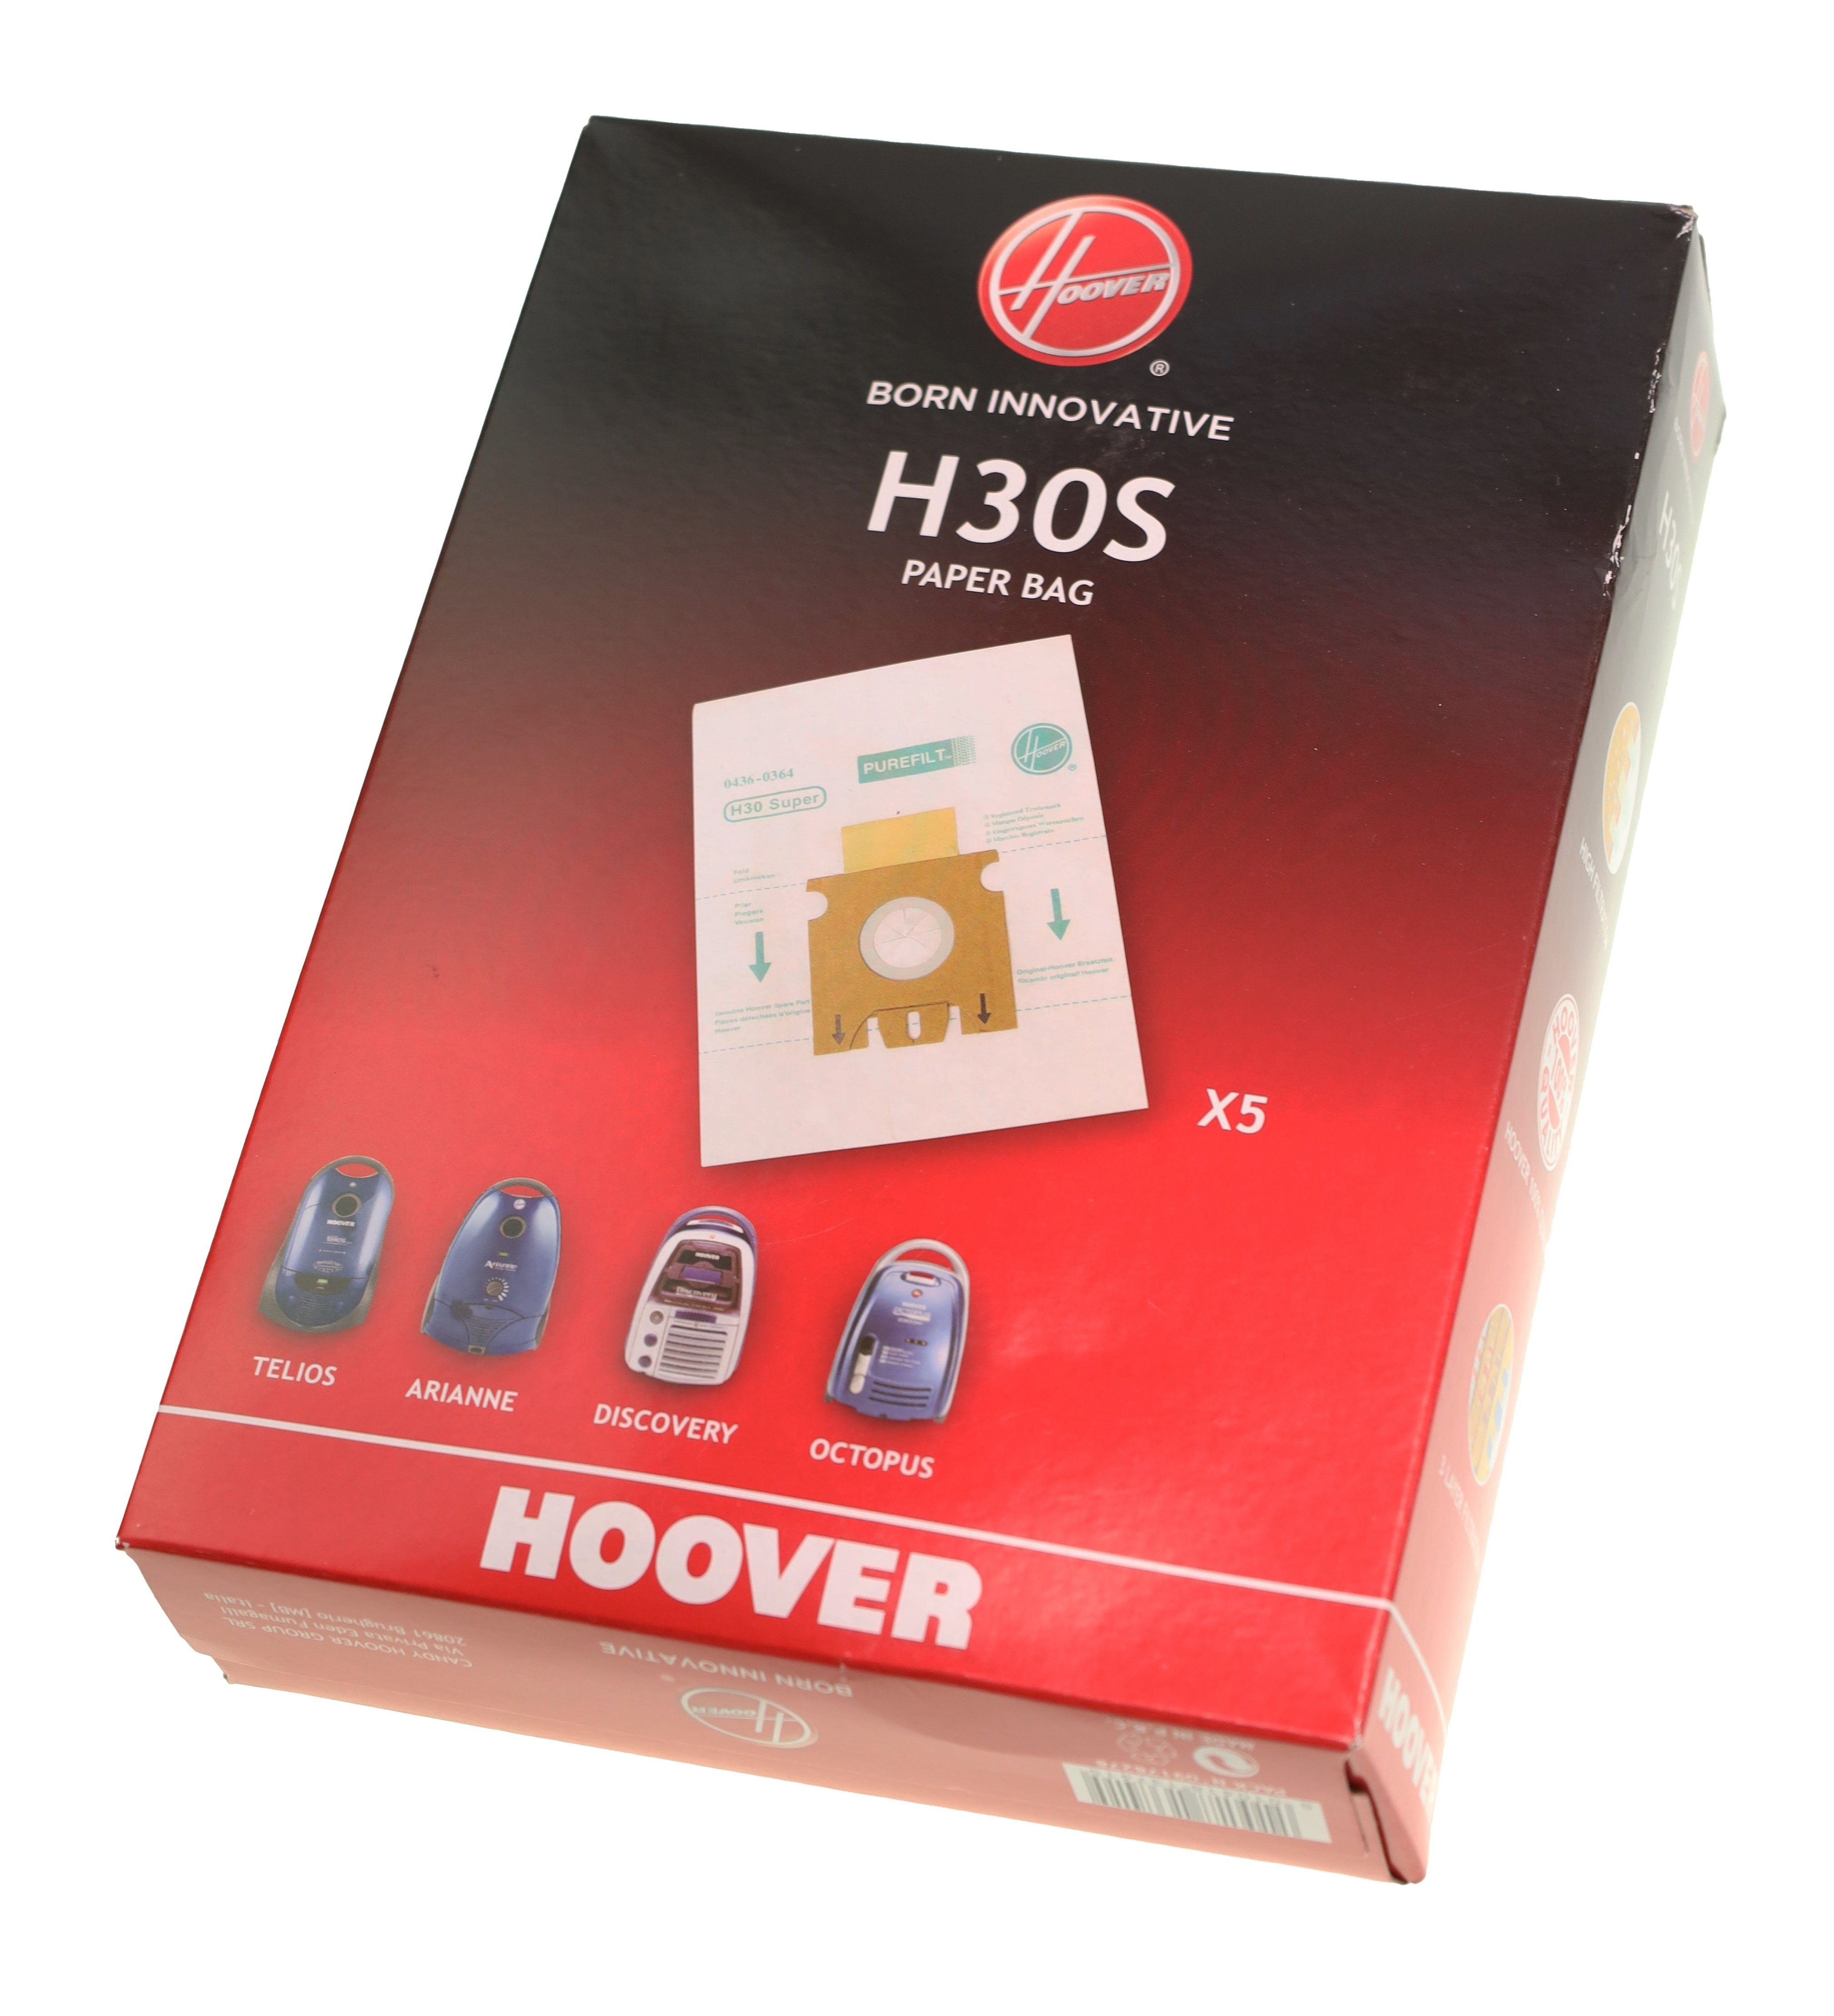 Staubsaugerbeutel H30 5x Telios Hoover für Hoover 09178278 Arianne Sensory Staubsaugerbeutel